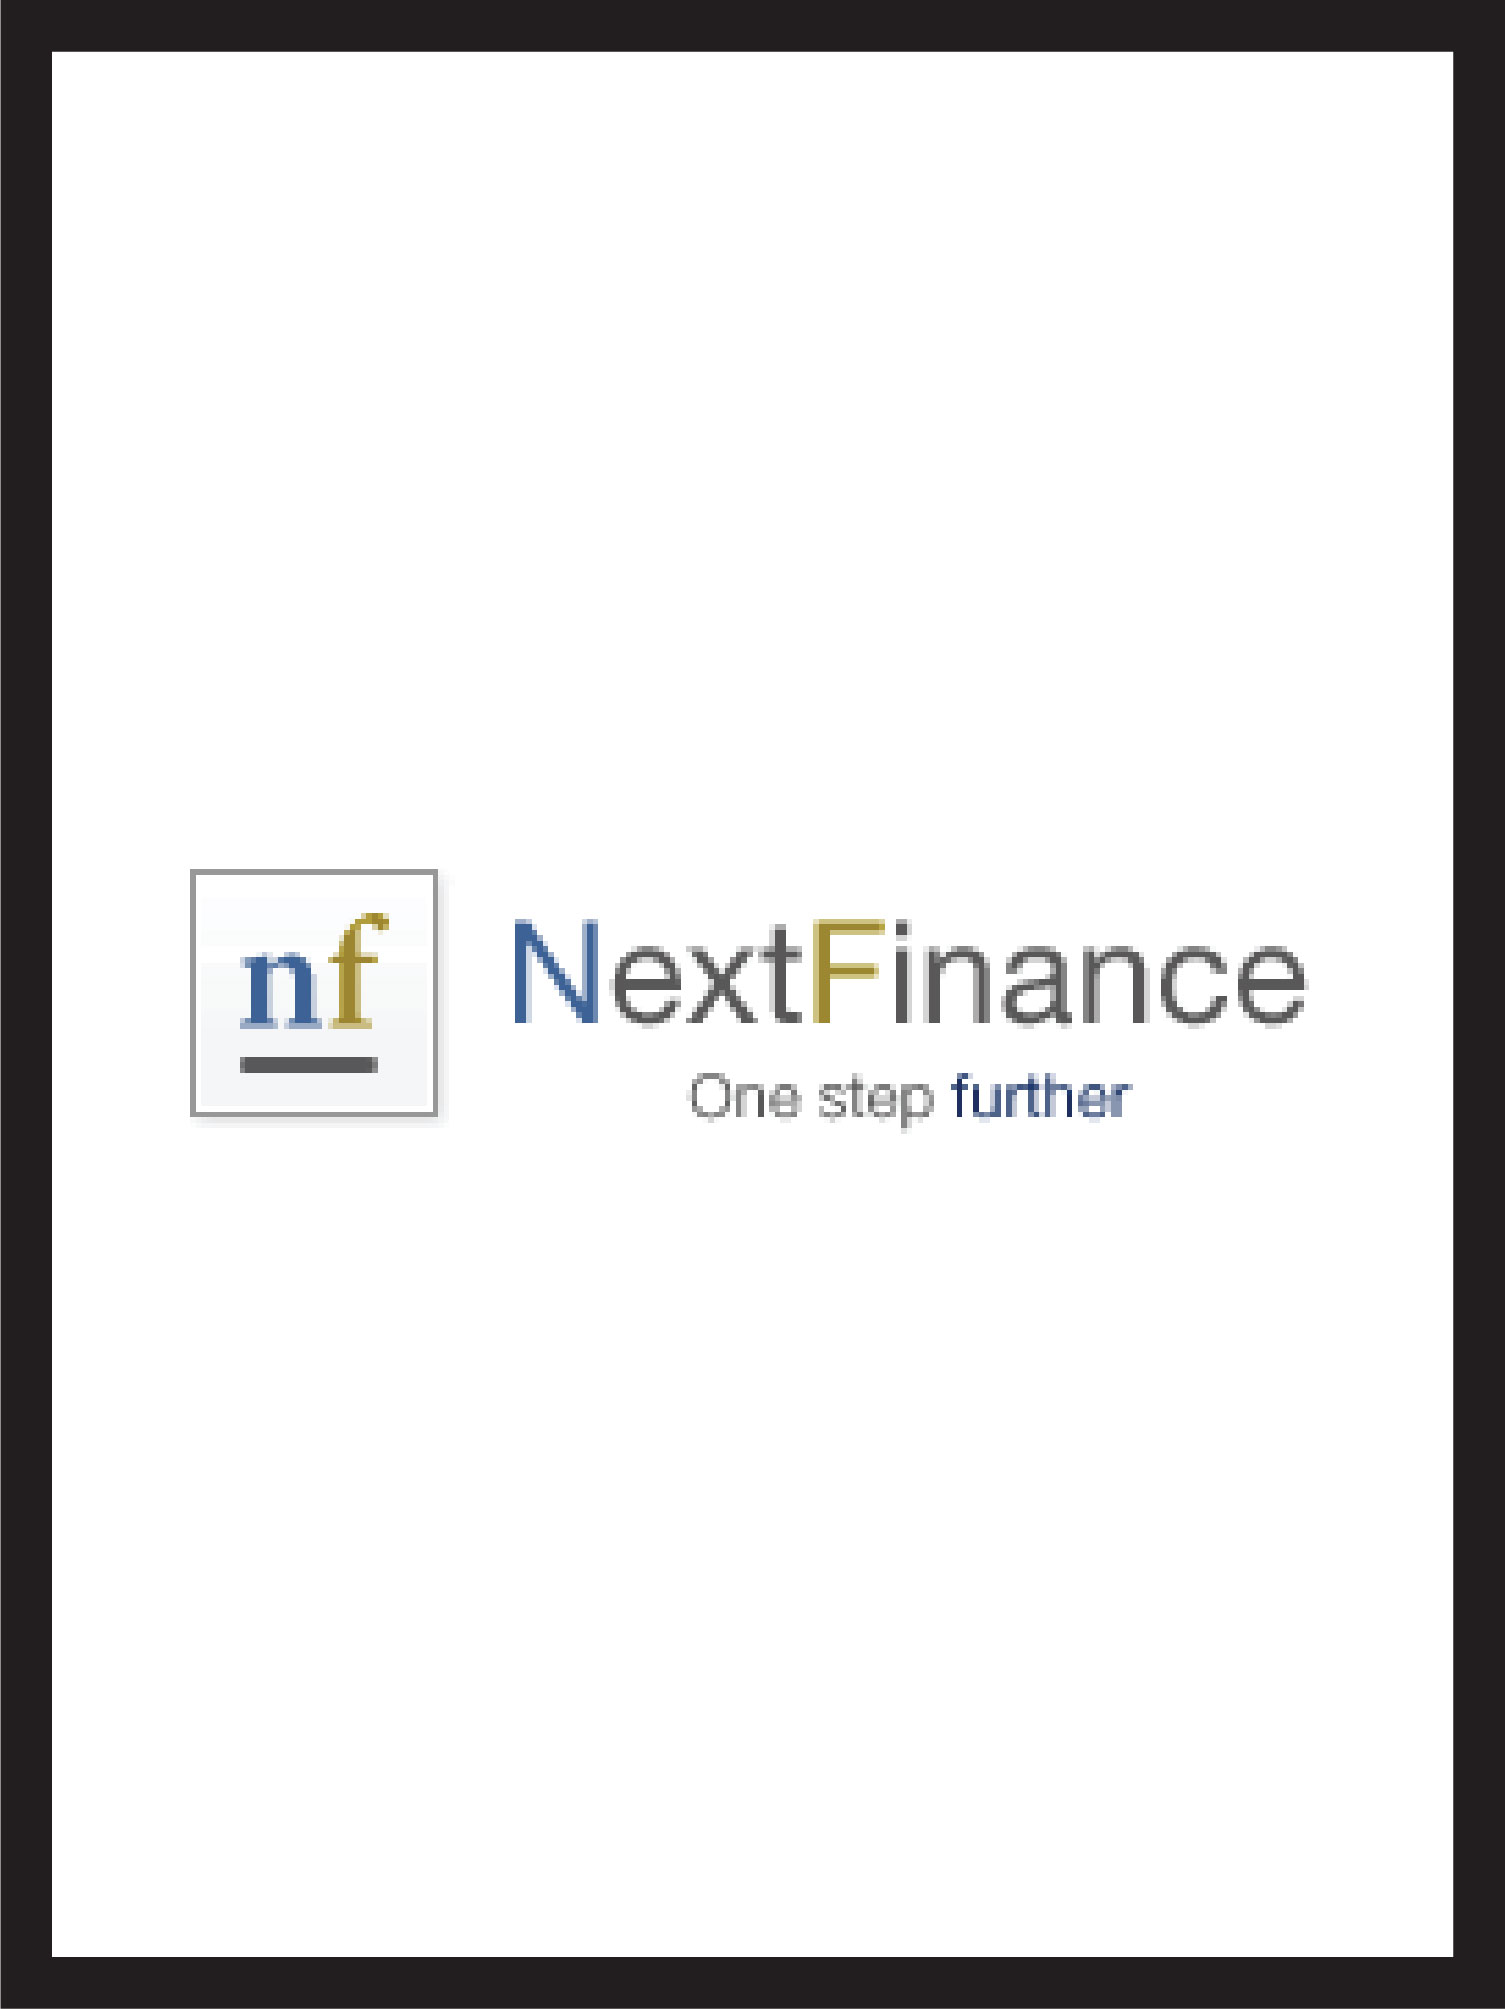 couverture et logo next finance